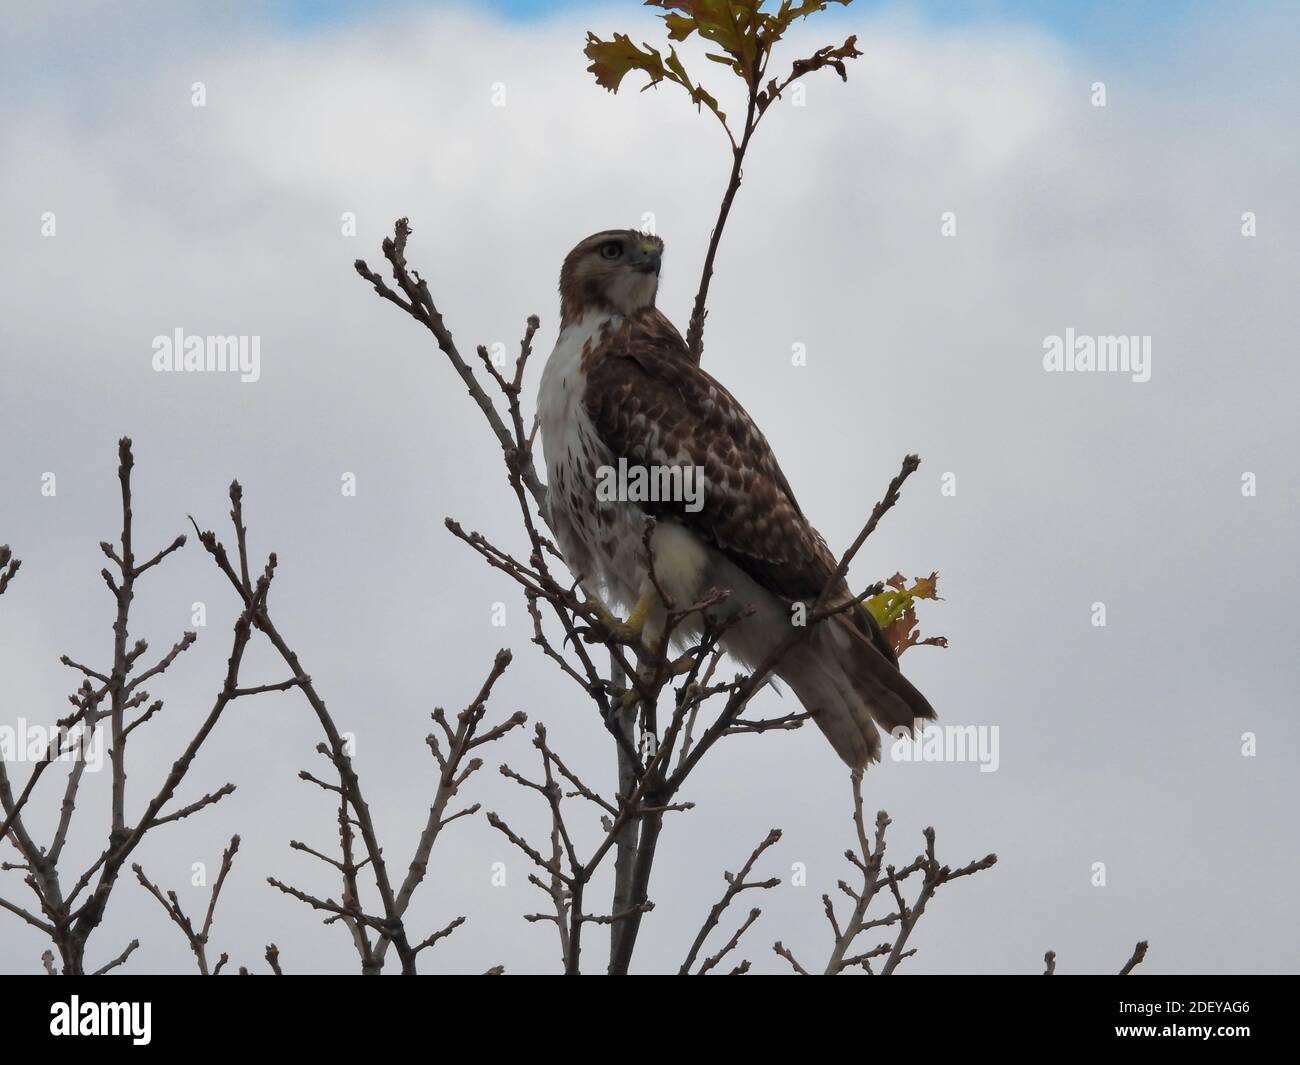 Un oiseau de proie de Red-Tail Hawk tourne la tête pour regarder Perchée vers l'arrière sur la branche supérieure avec des feuilles de couleur automnale Dessus de l'arbre dans la vue d'automne Banque D'Images